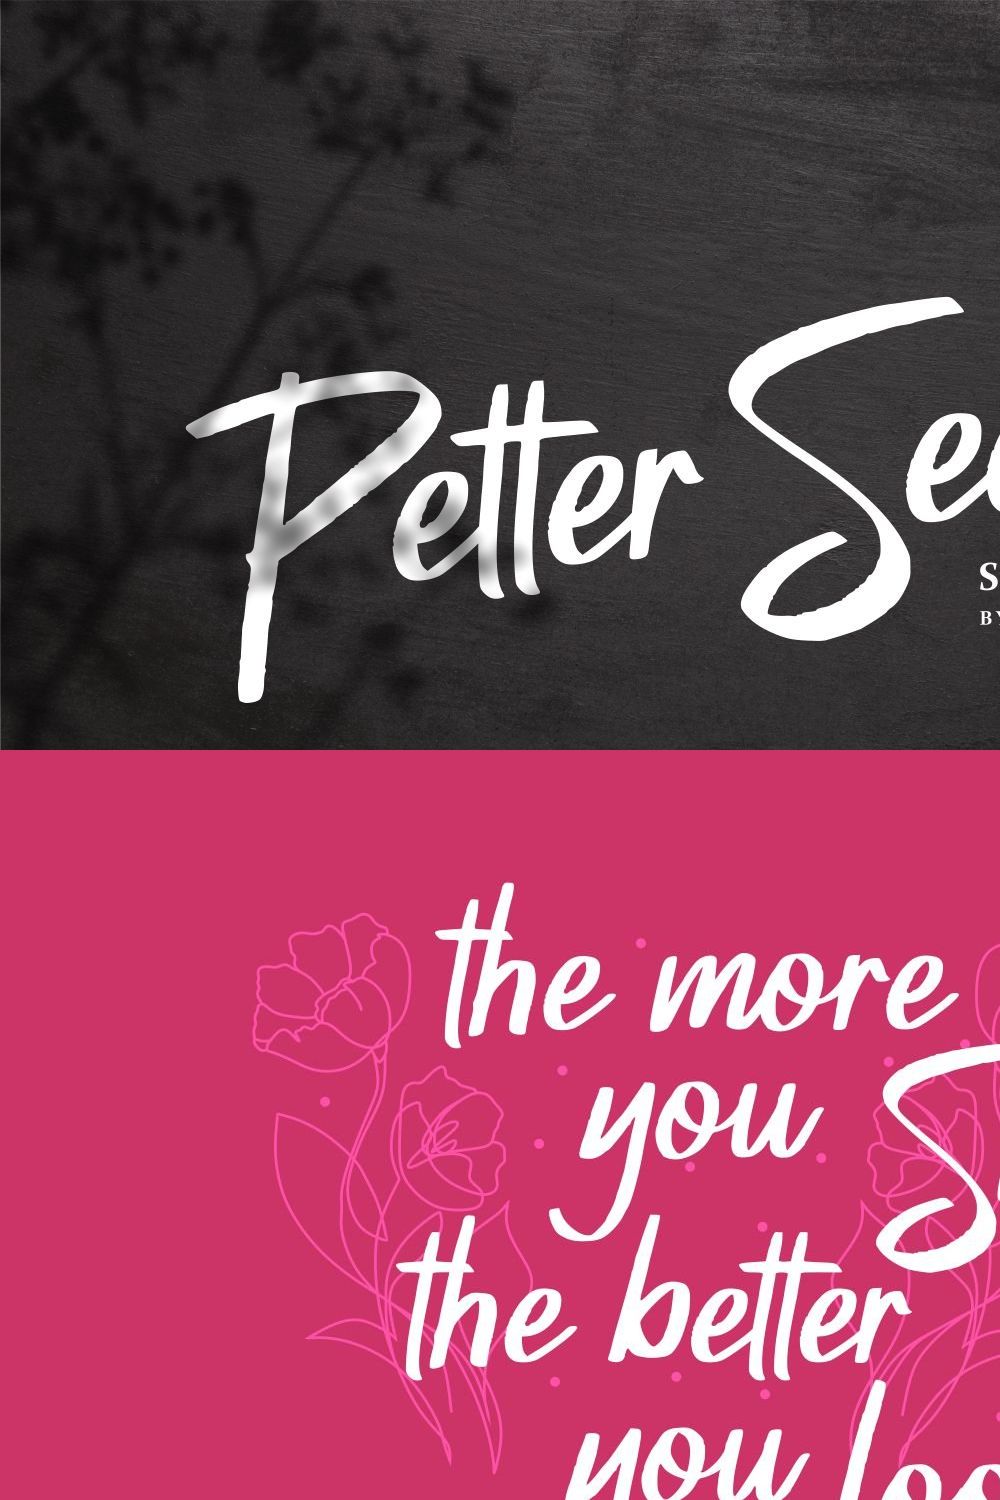 Petter Secret Font pinterest preview image.